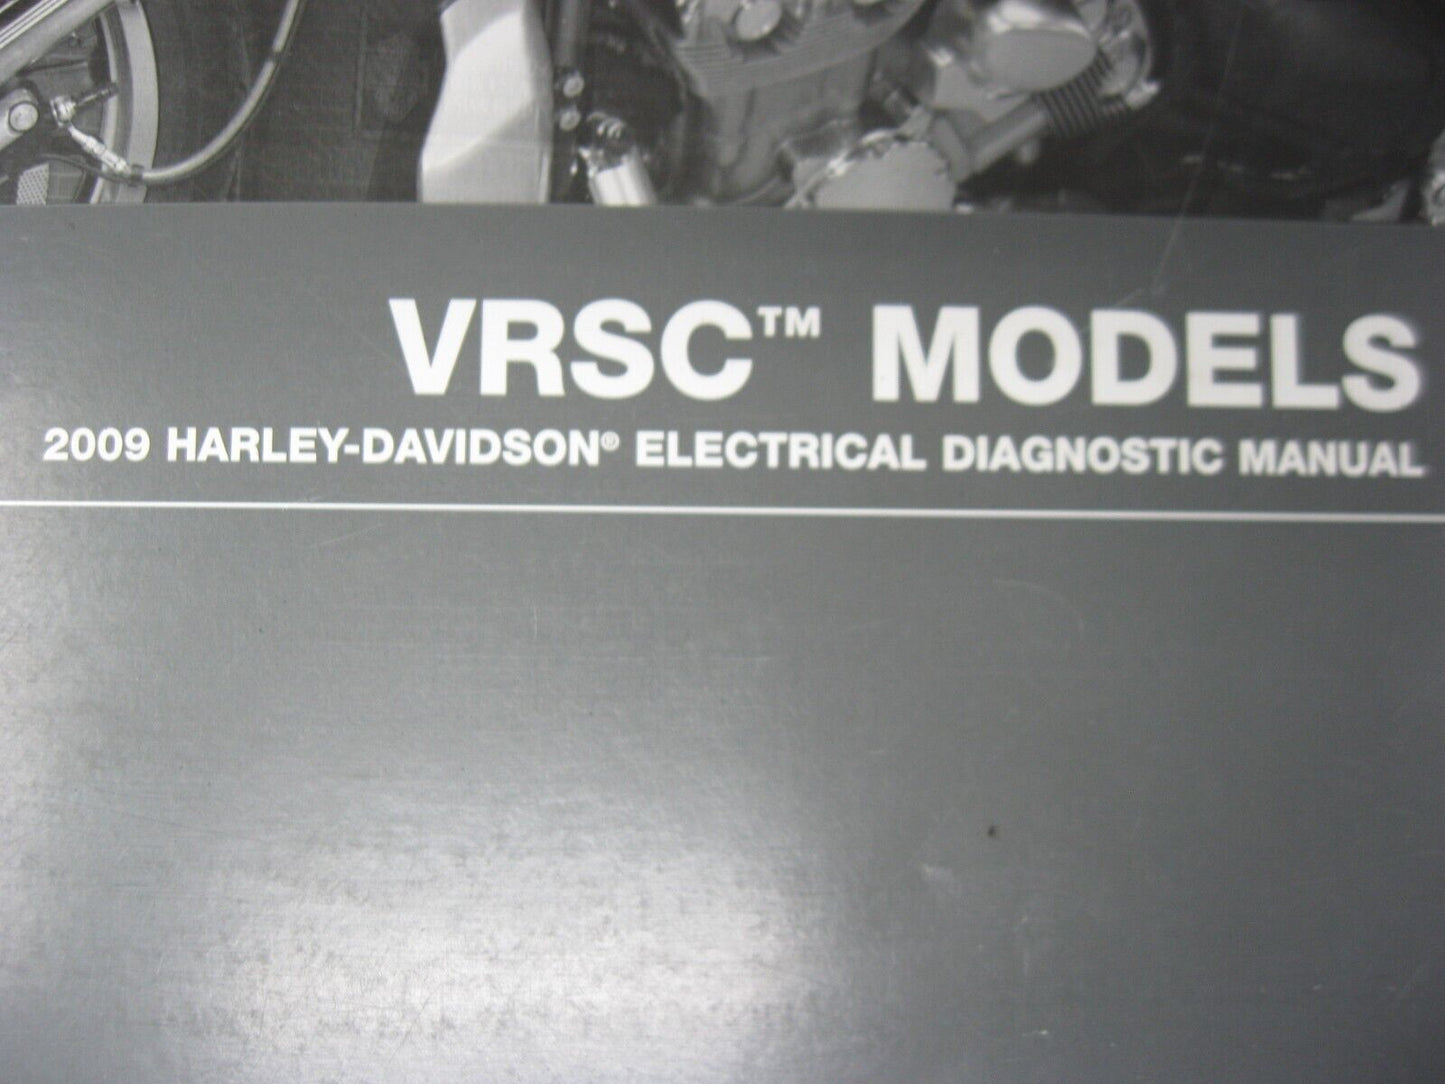 Harley-Davidson VRSC Models 2009 Electrical Diagnostic Manual 99499-09